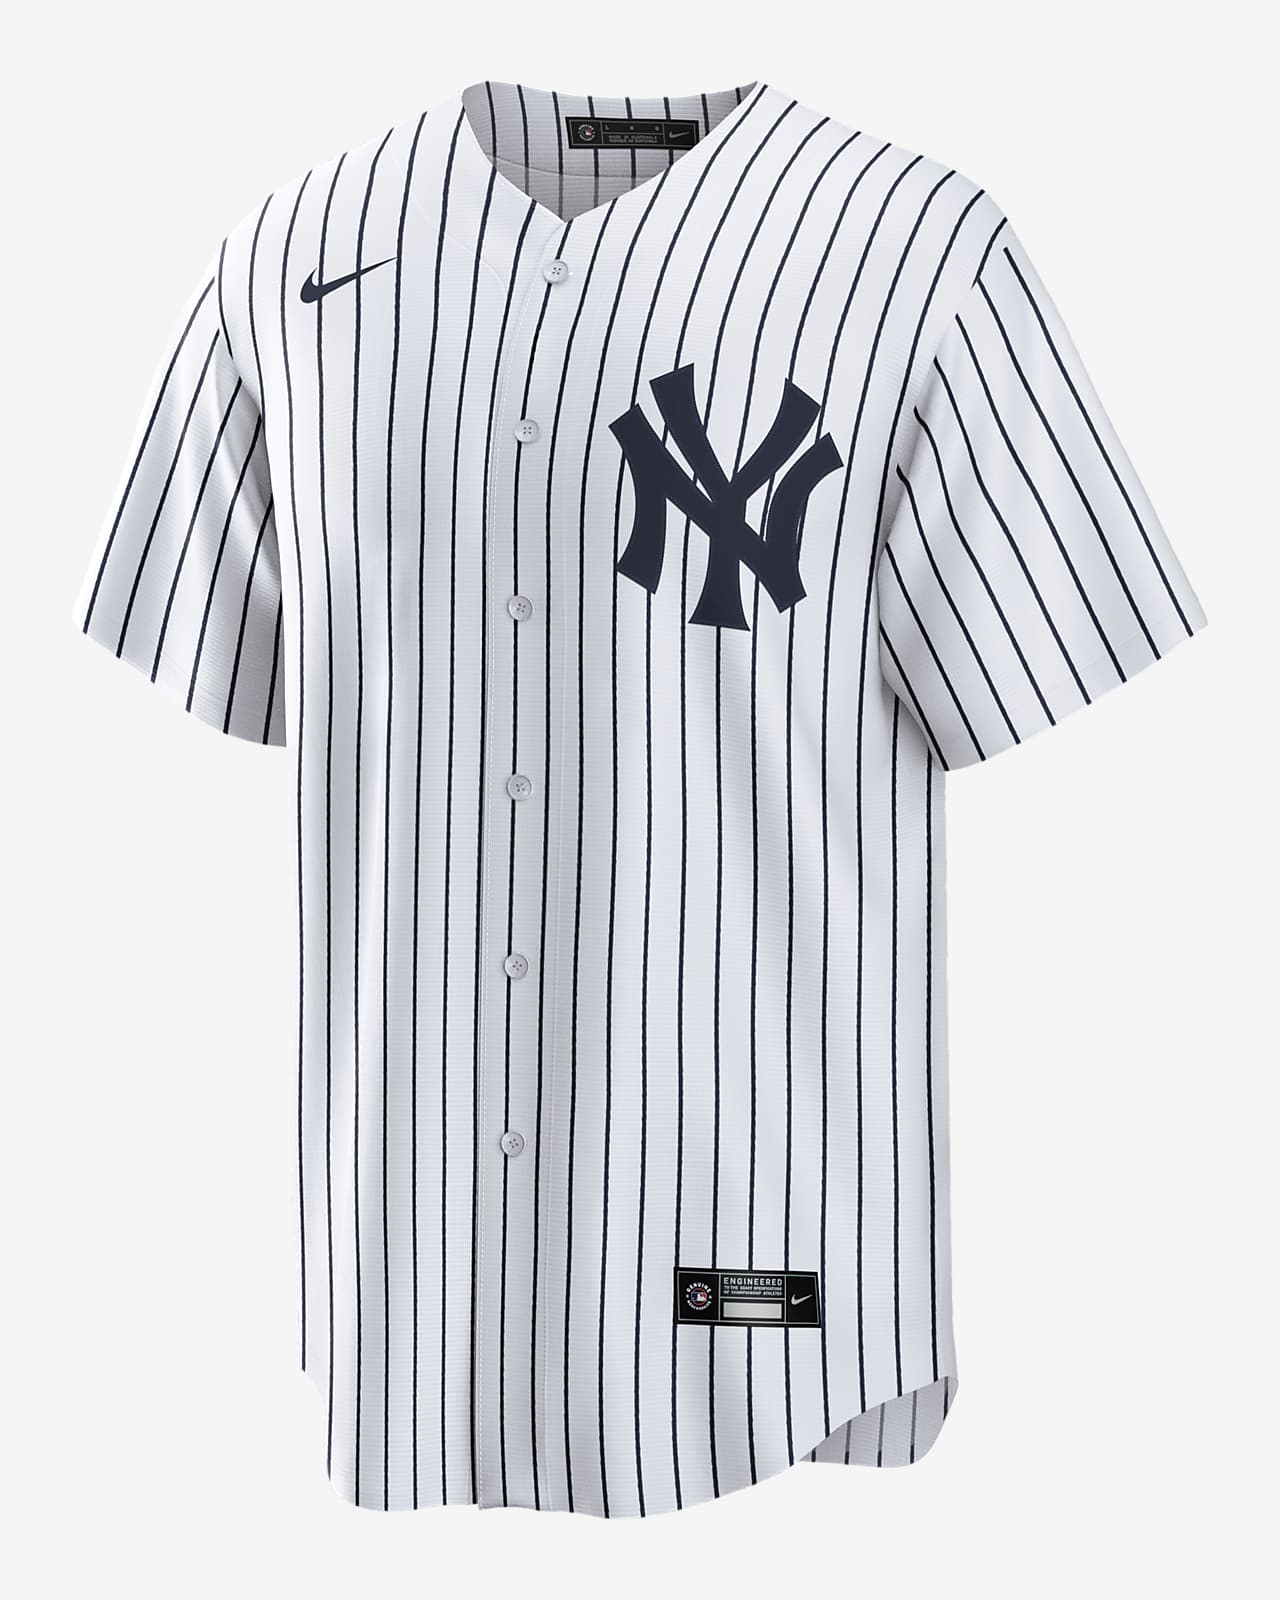 Jersey Nike de la MLB Replica para hombre Juan Soto New York Yankees